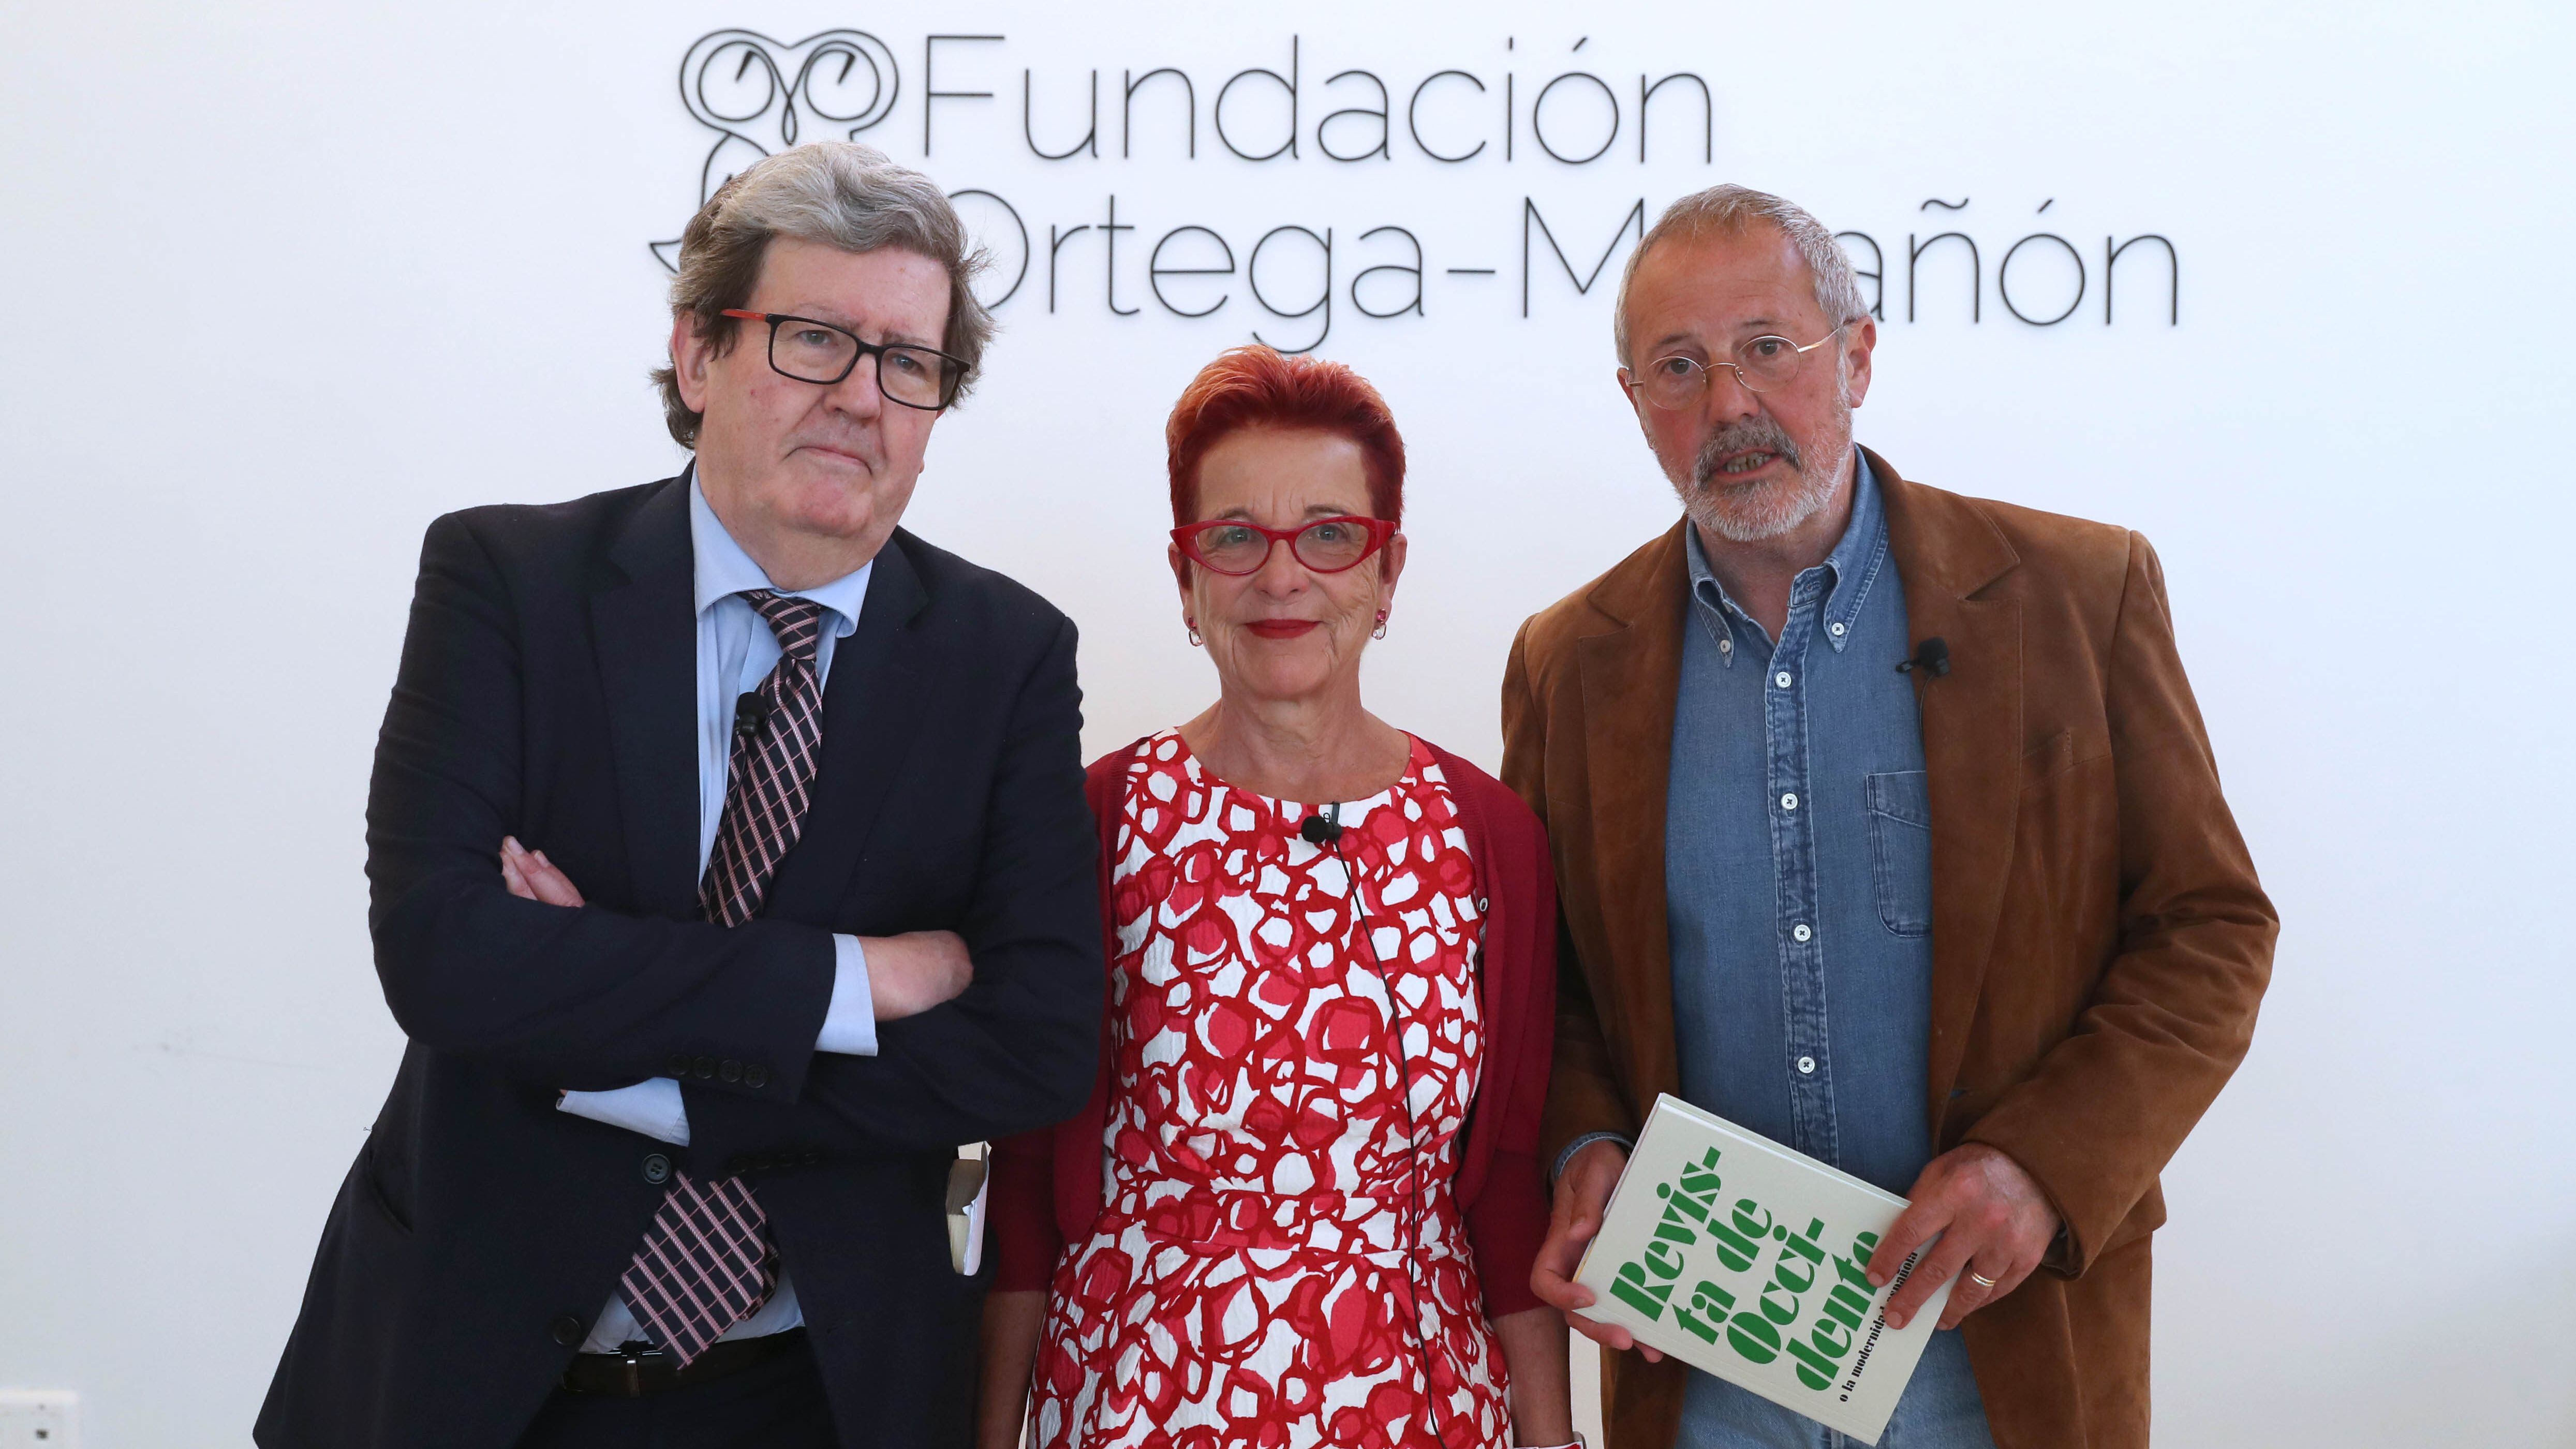 Juan Manuel Bonet, María Luisa Maillard y Fernando Rodríguez Lafuente, en la Fundación Ortega-Marañón, en Madrid.